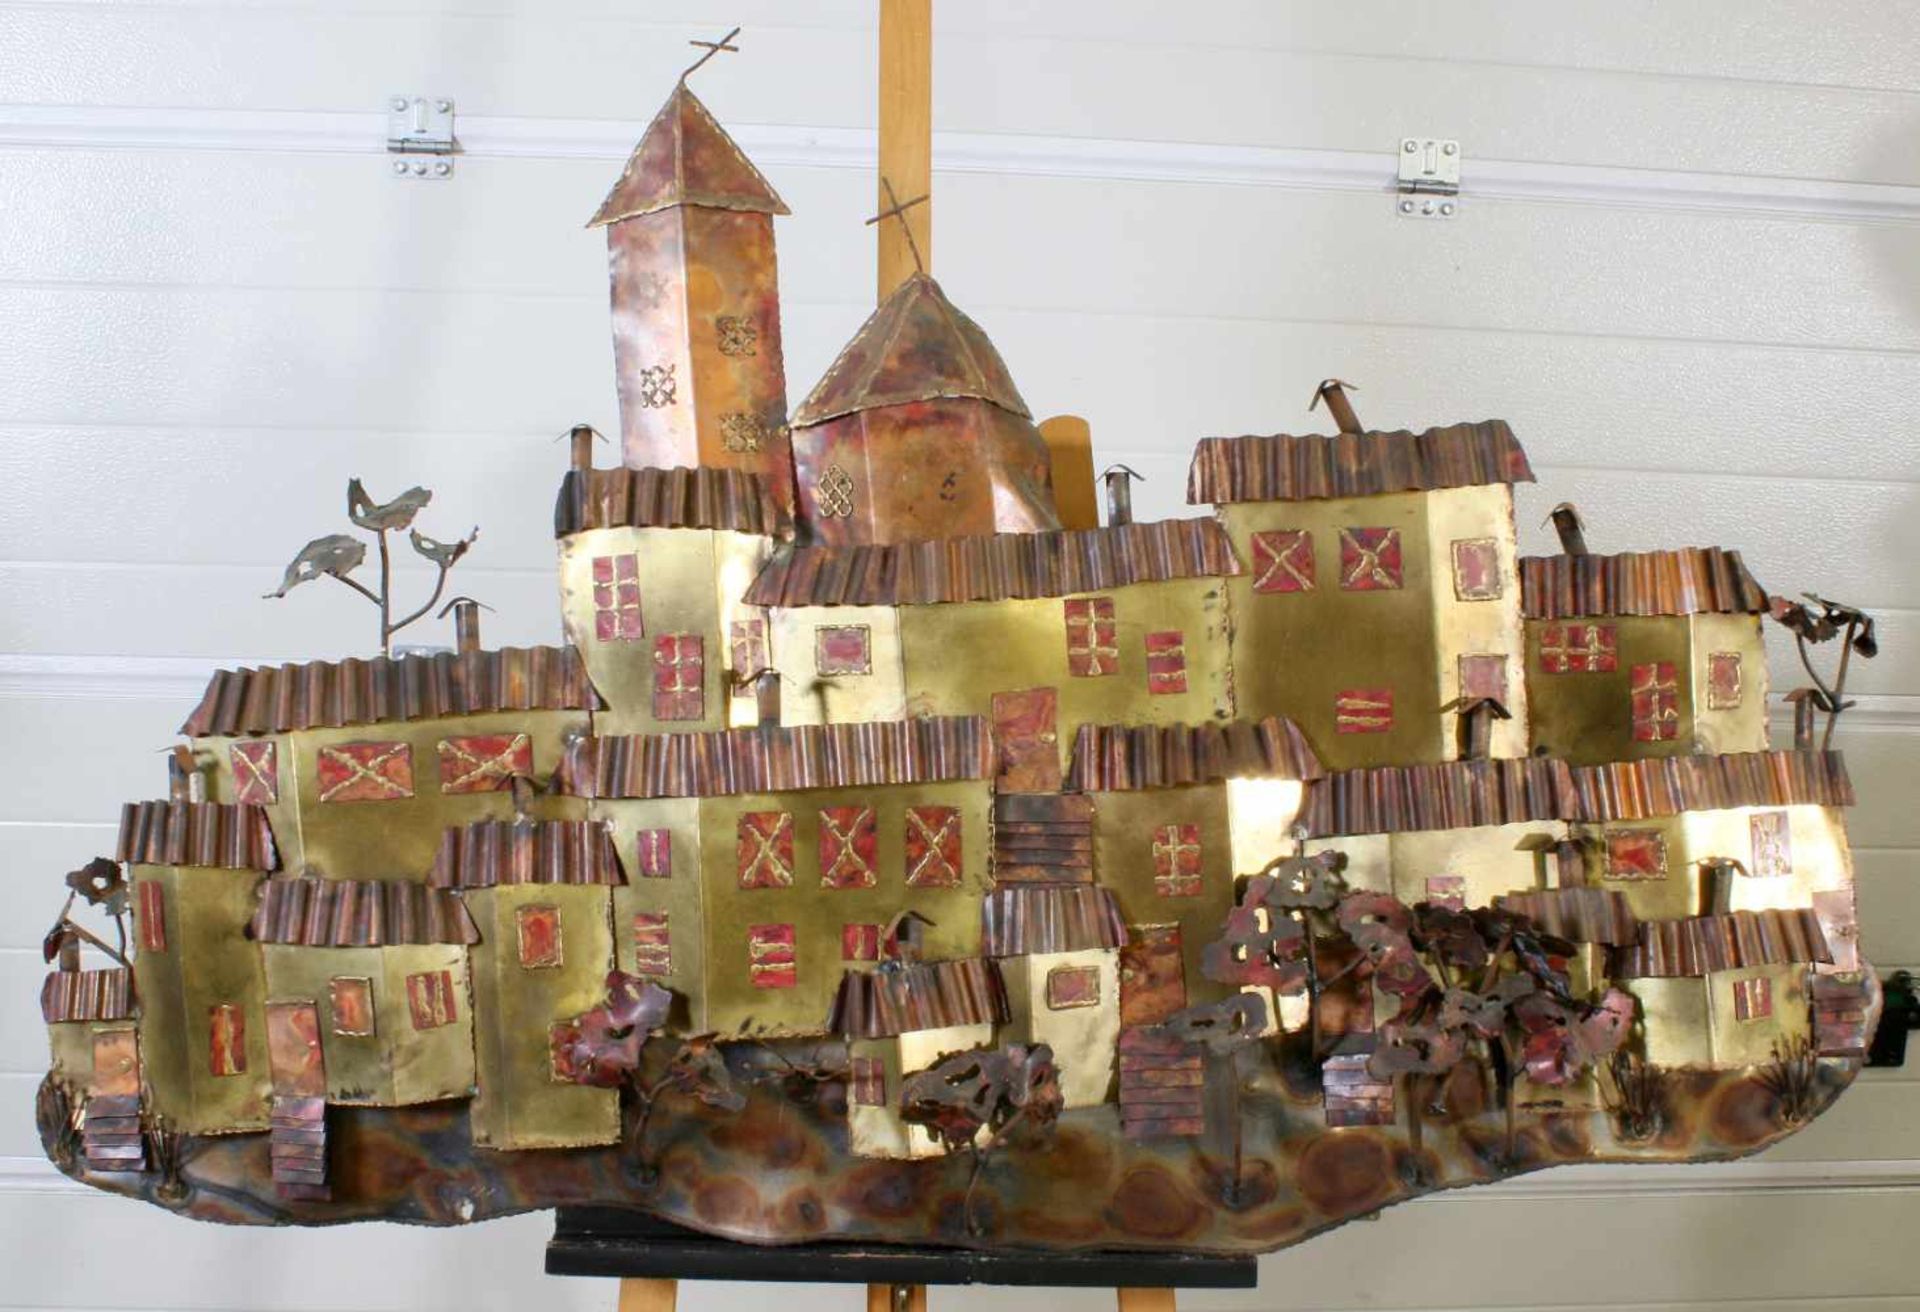 Kunstplastik - Katalanisches DorfBuntmetallarbeit, Ansicht eines Dorfes mit Kirche, Häusern und